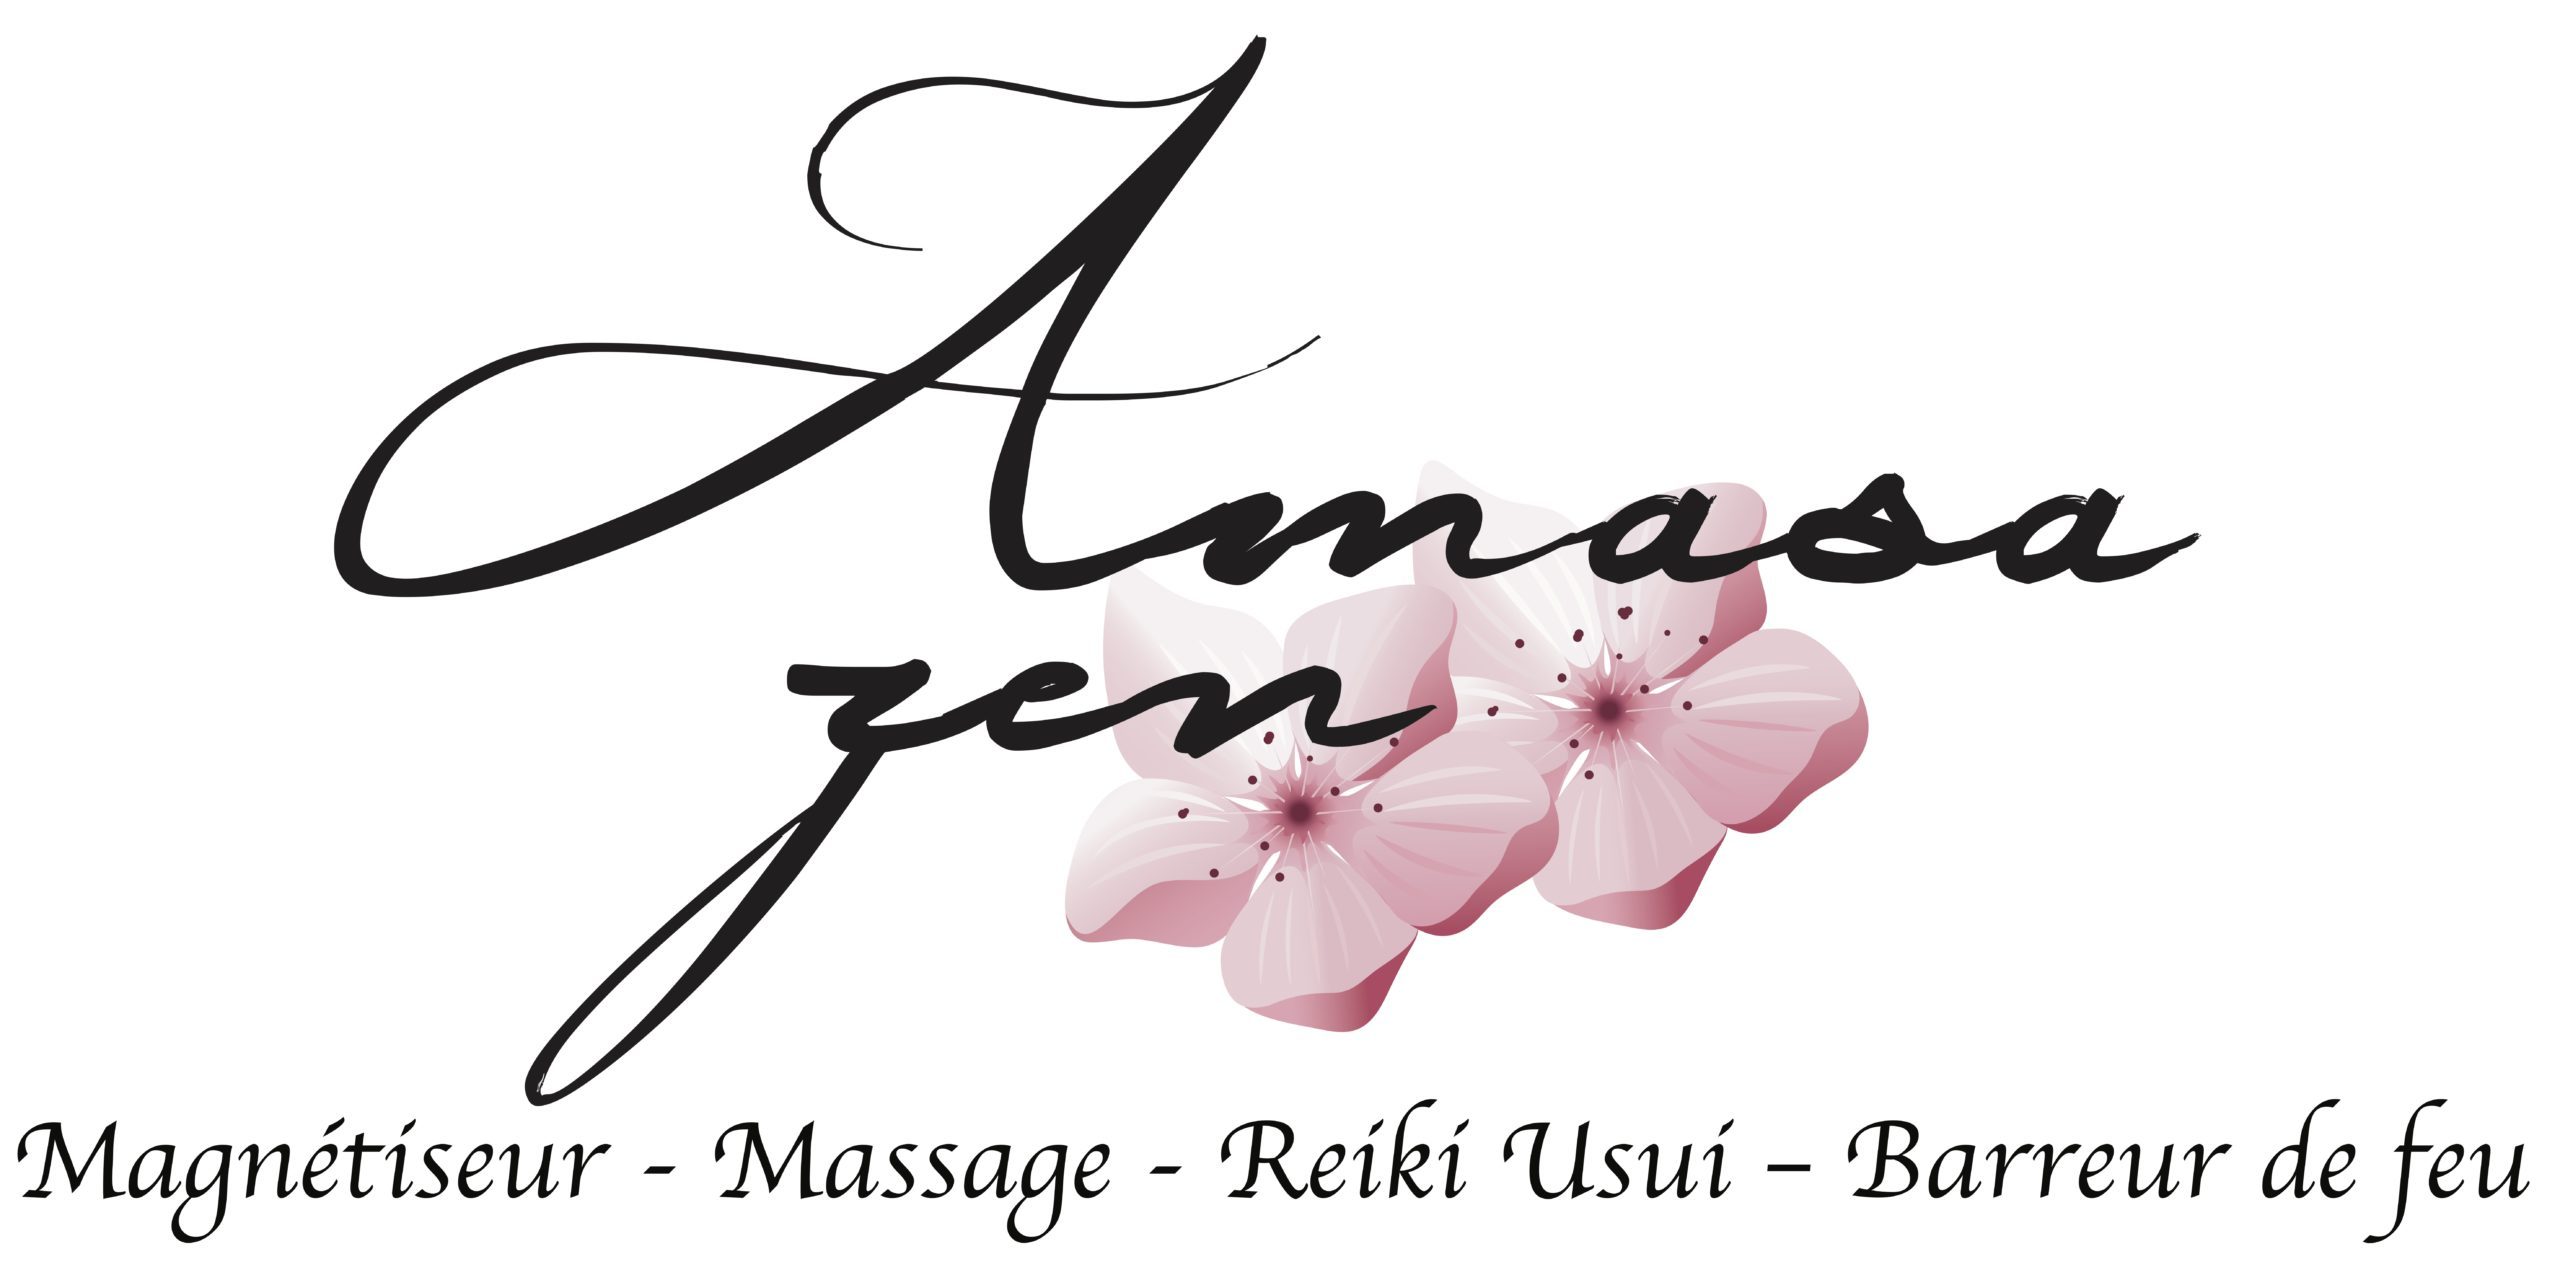 Magnétiseur Amasa Zen – Ghessane yalouz // Massage – Reiki Usui – Barreur de feu // Proche besancon